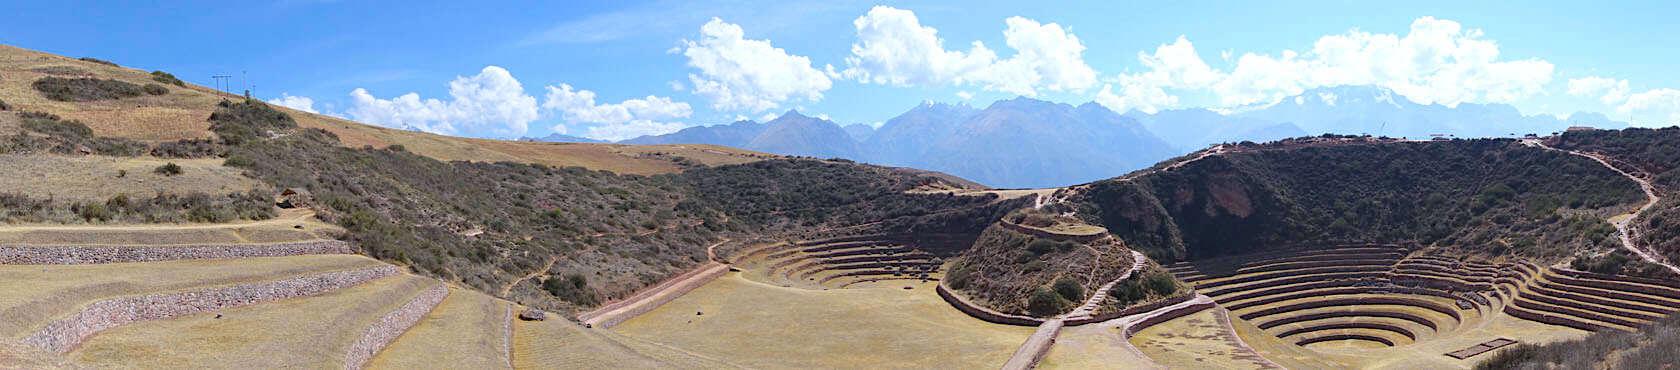 Moray ist der Name einer Anlage im heiligen Tal von Cusco, die aus kreisrunden Terrassen besteht und in der die Inkas Pflanzen an unterschiedliche Höhenlagen anpassten